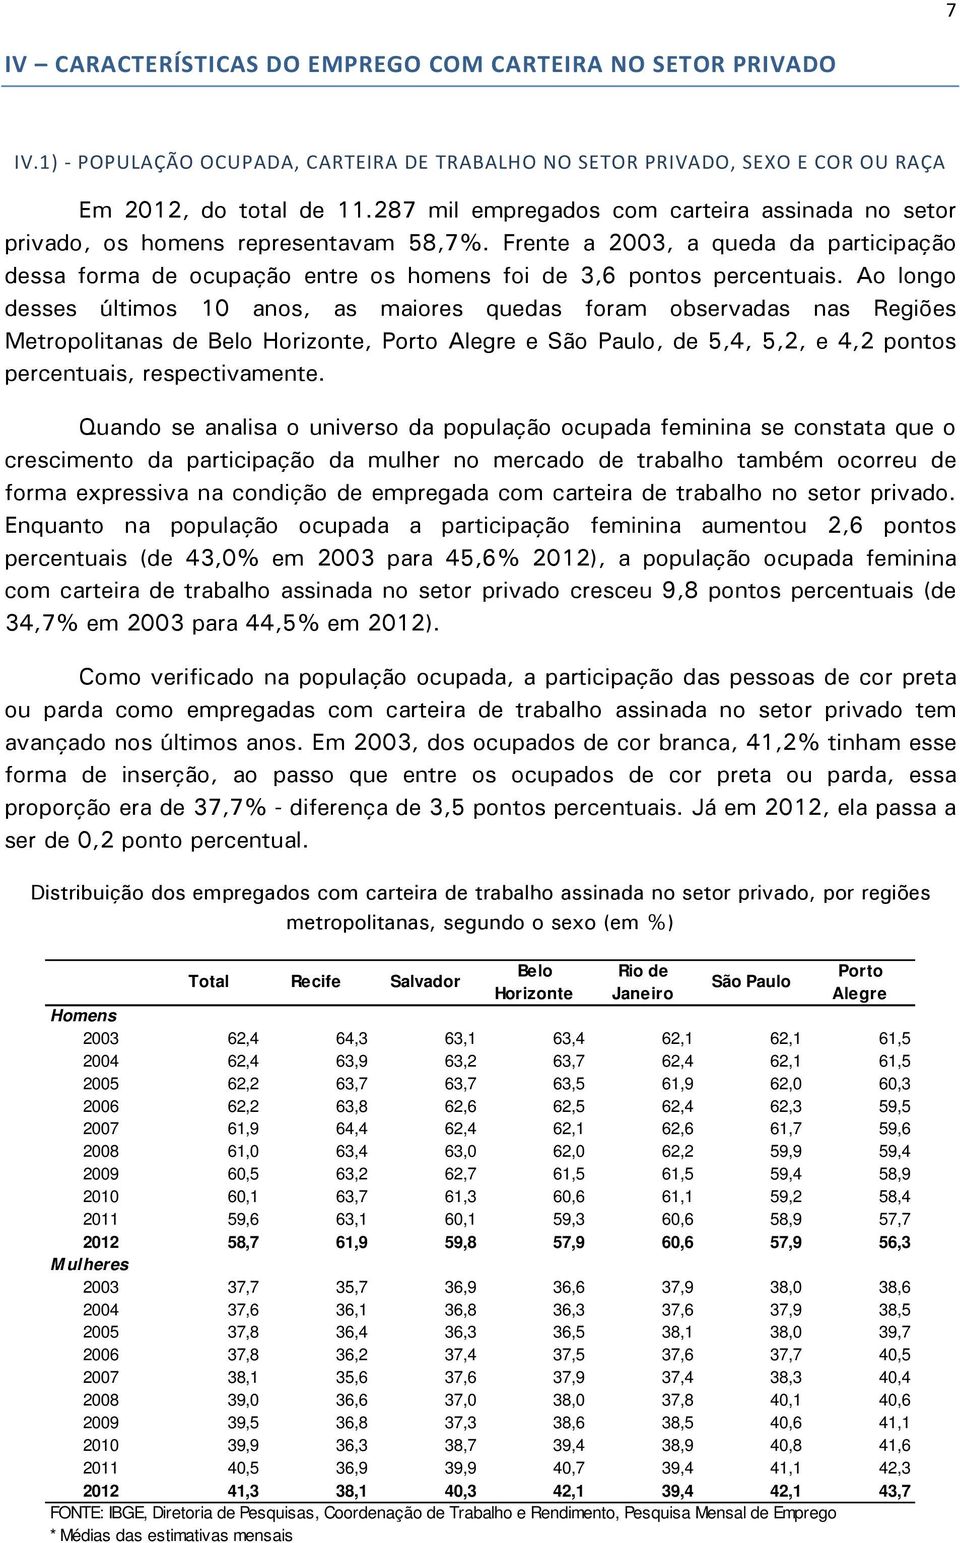 Ao longo desses últimos 10 anos, as maiores quedas foram observadas nas Regiões Metropolitanas de Belo Horizonte, Porto Alegre e, de 5,4, 5,2, e 4,2 pontos percentuais, respectivamente.